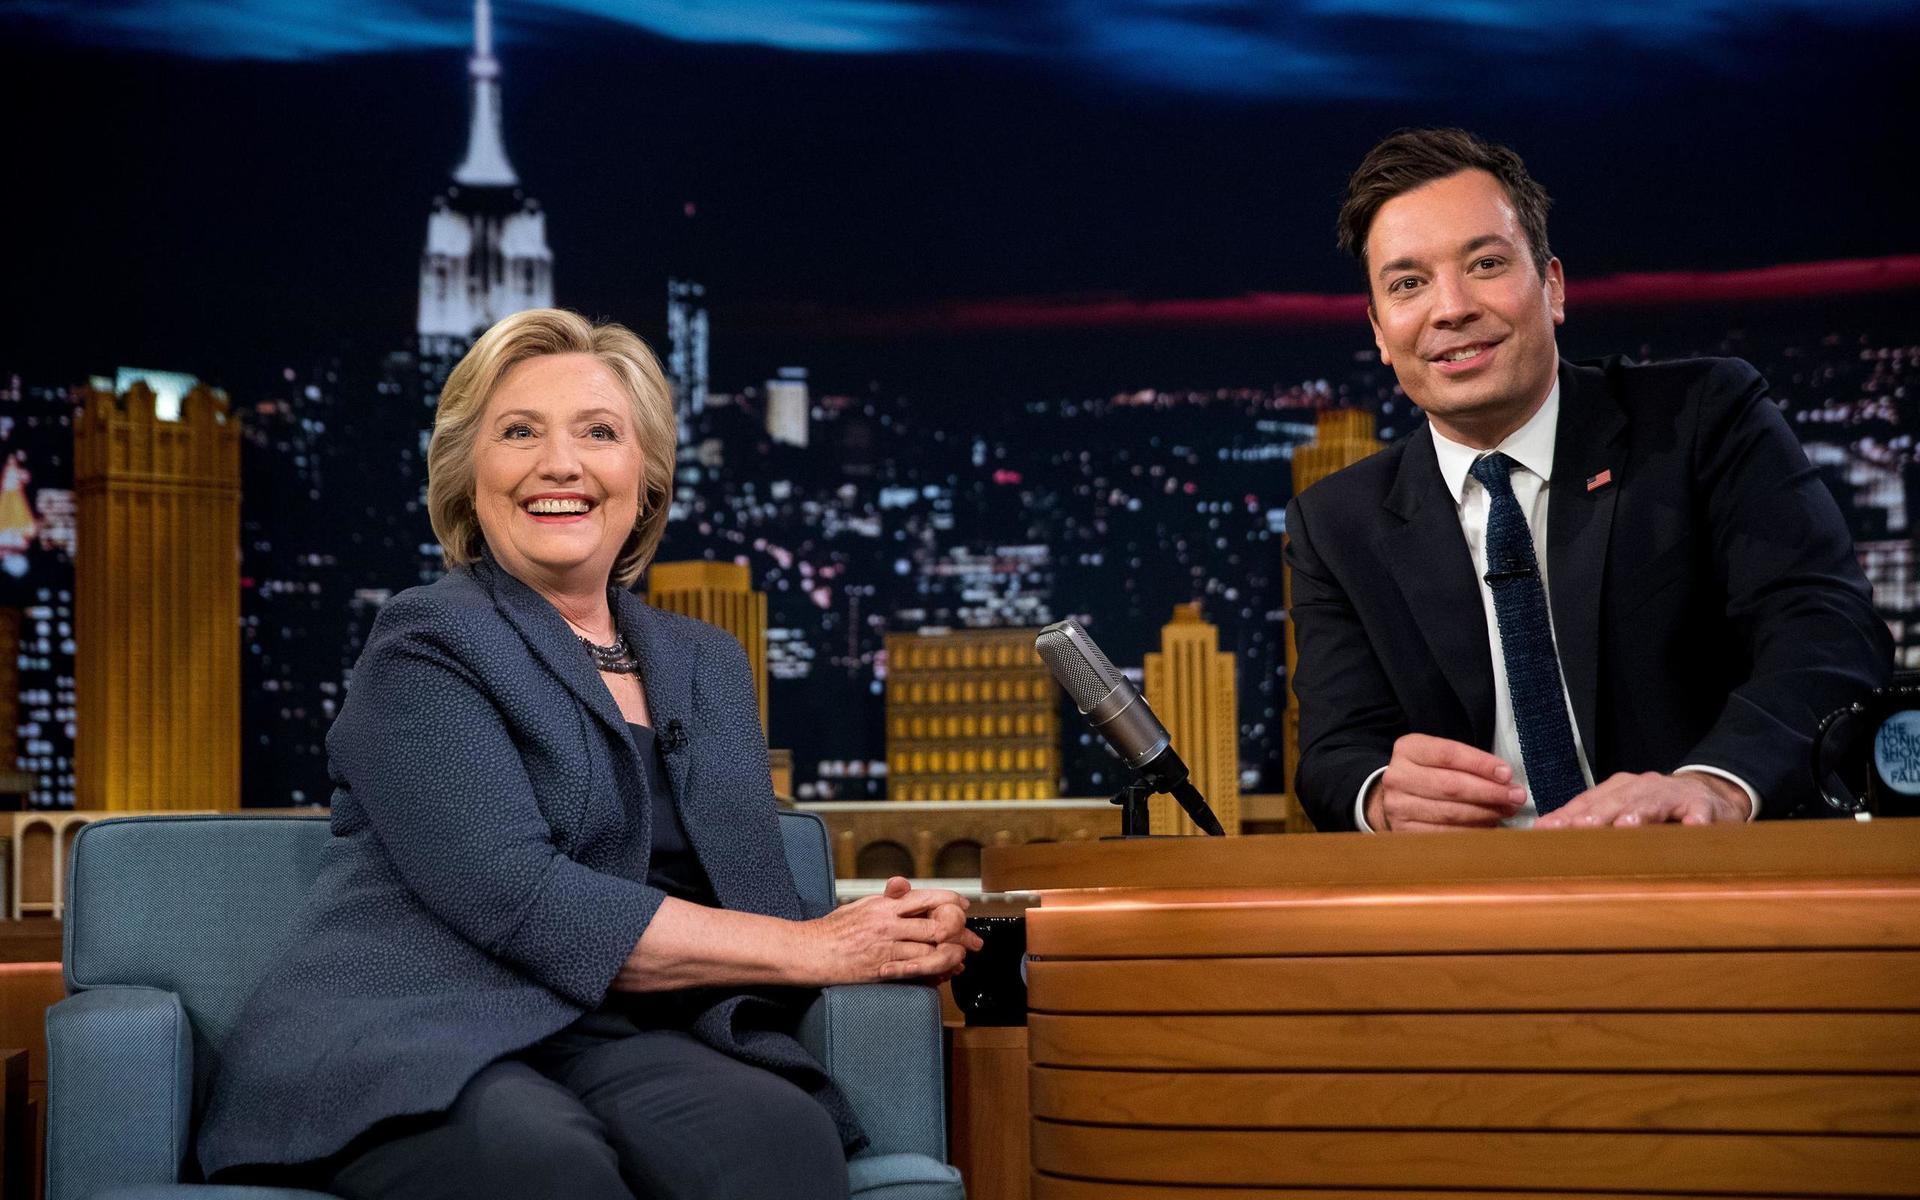 Demokraternas före detta presidentkandidat  Hillary Clinton har besökt Jimmy Fallon i hans talkshow ”The Tonight Show”